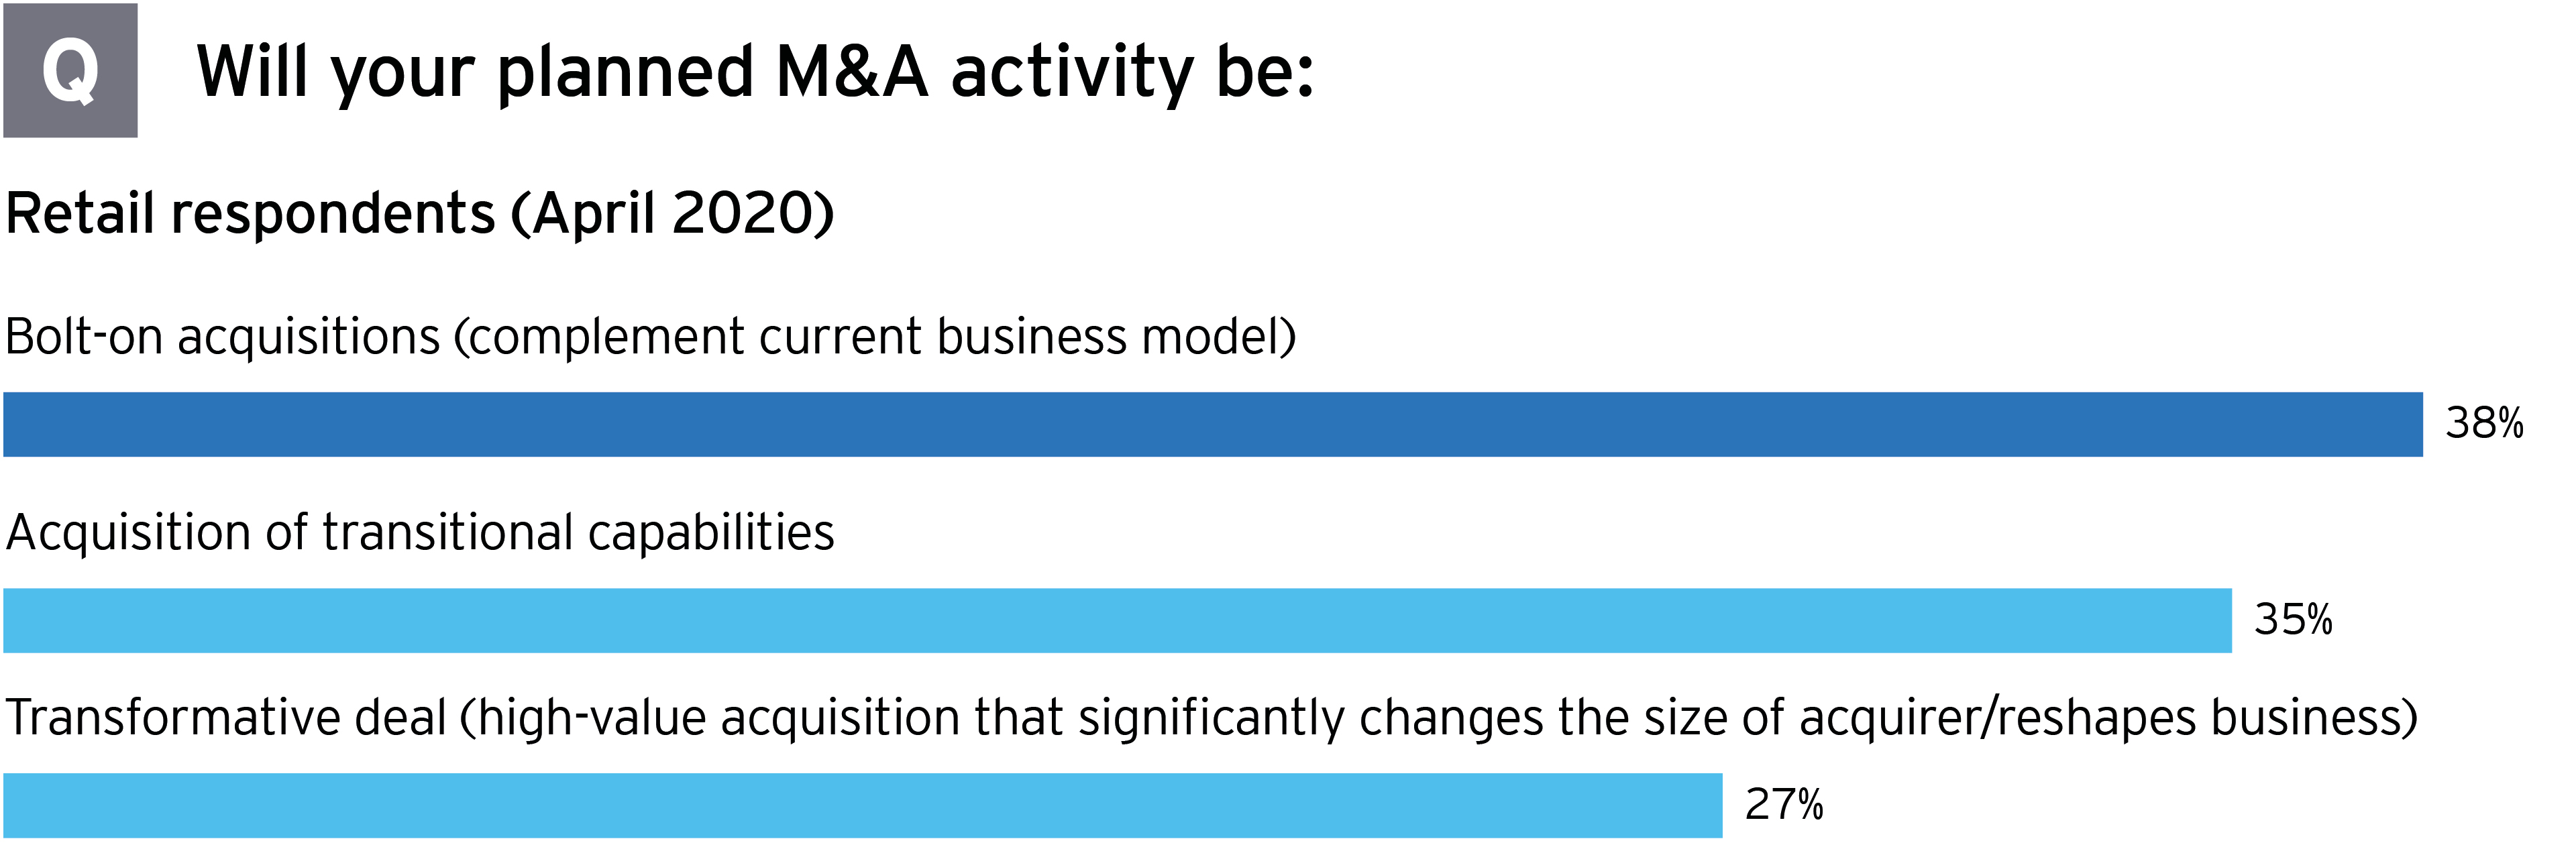 Encuesta sobre M&A acerca de la actividad de fusiones y adquisiciones planificadas en el sector retail